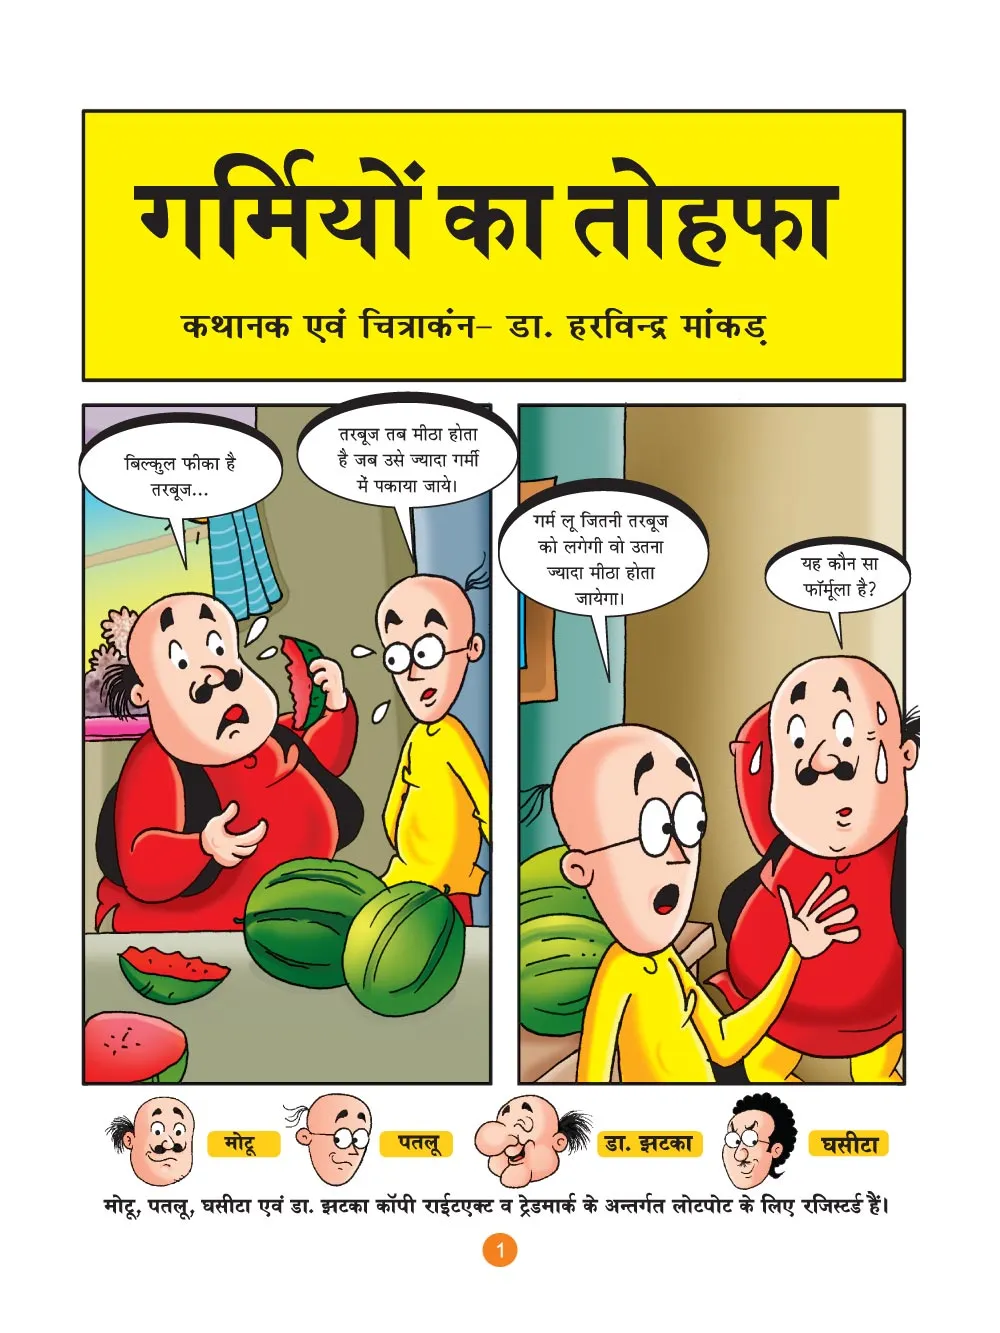 मोटू पतलू की कॉमिक्स- (Motu Patlu Ki Comics) गर्मियों का तोहफा  :